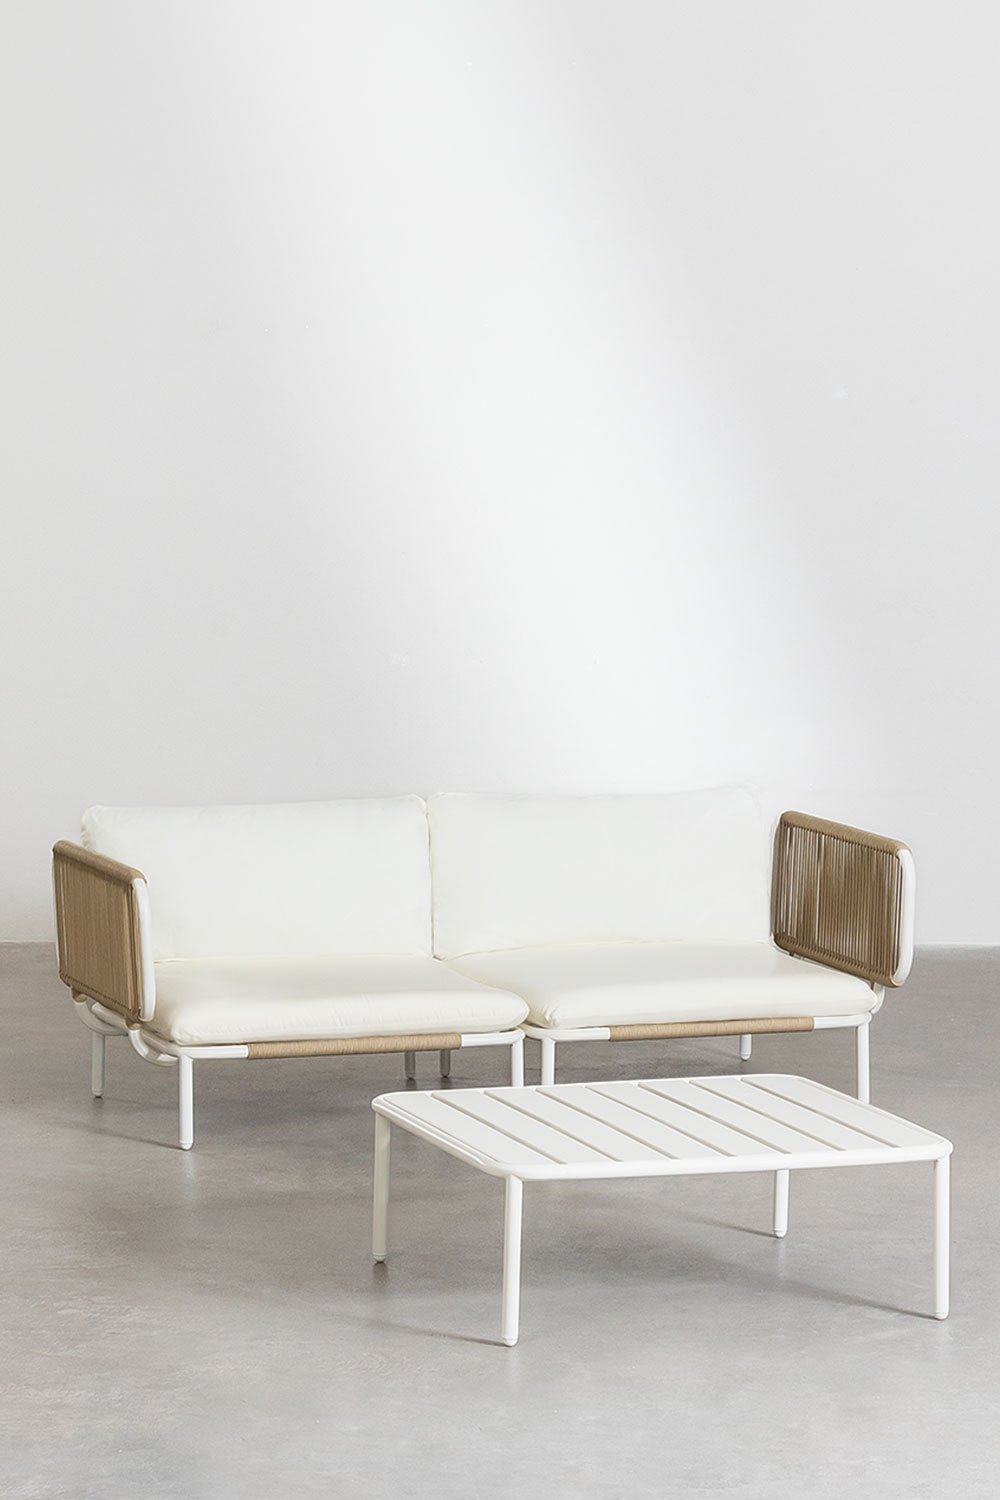 Dwuczęściowa modułowa sofa ogrodowa z 2 narożnymi fotelami i stolikiem kawowym w stylu Roubly, obrazek w galerii 1